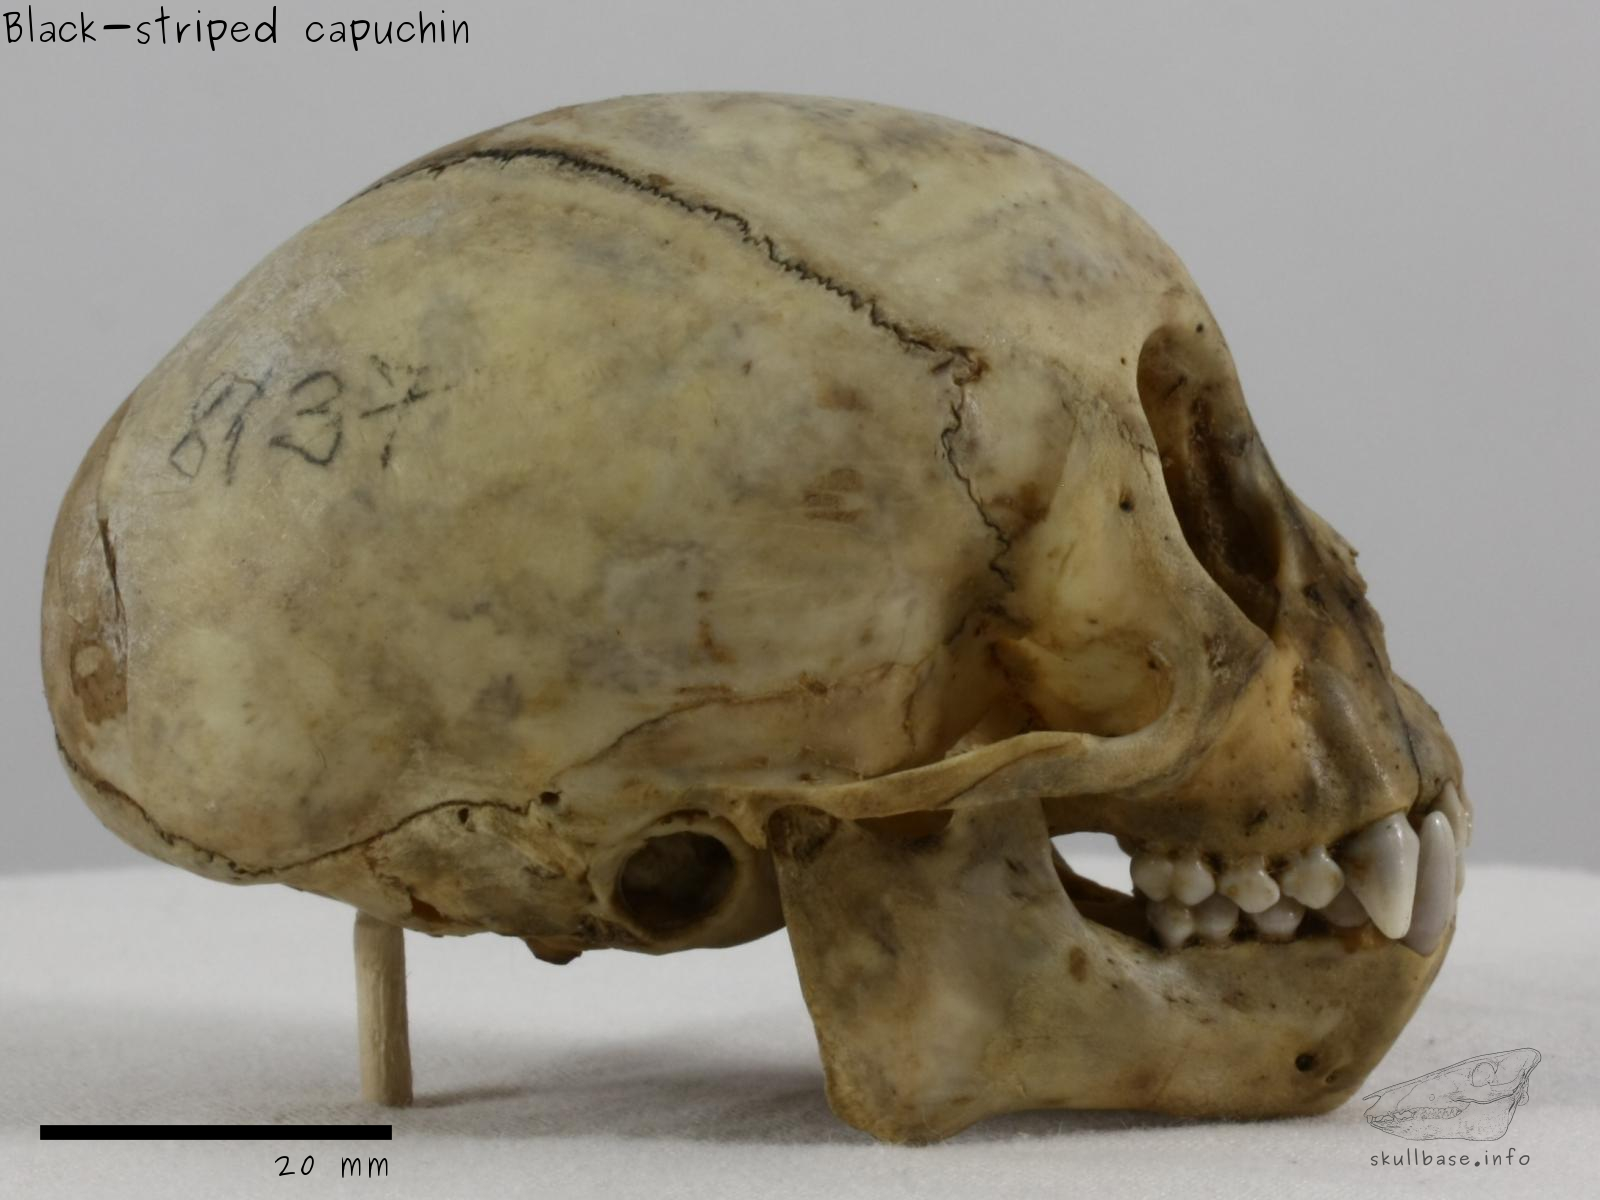 Black-striped capuchin (Sapajus libidinosus) skull lateral view